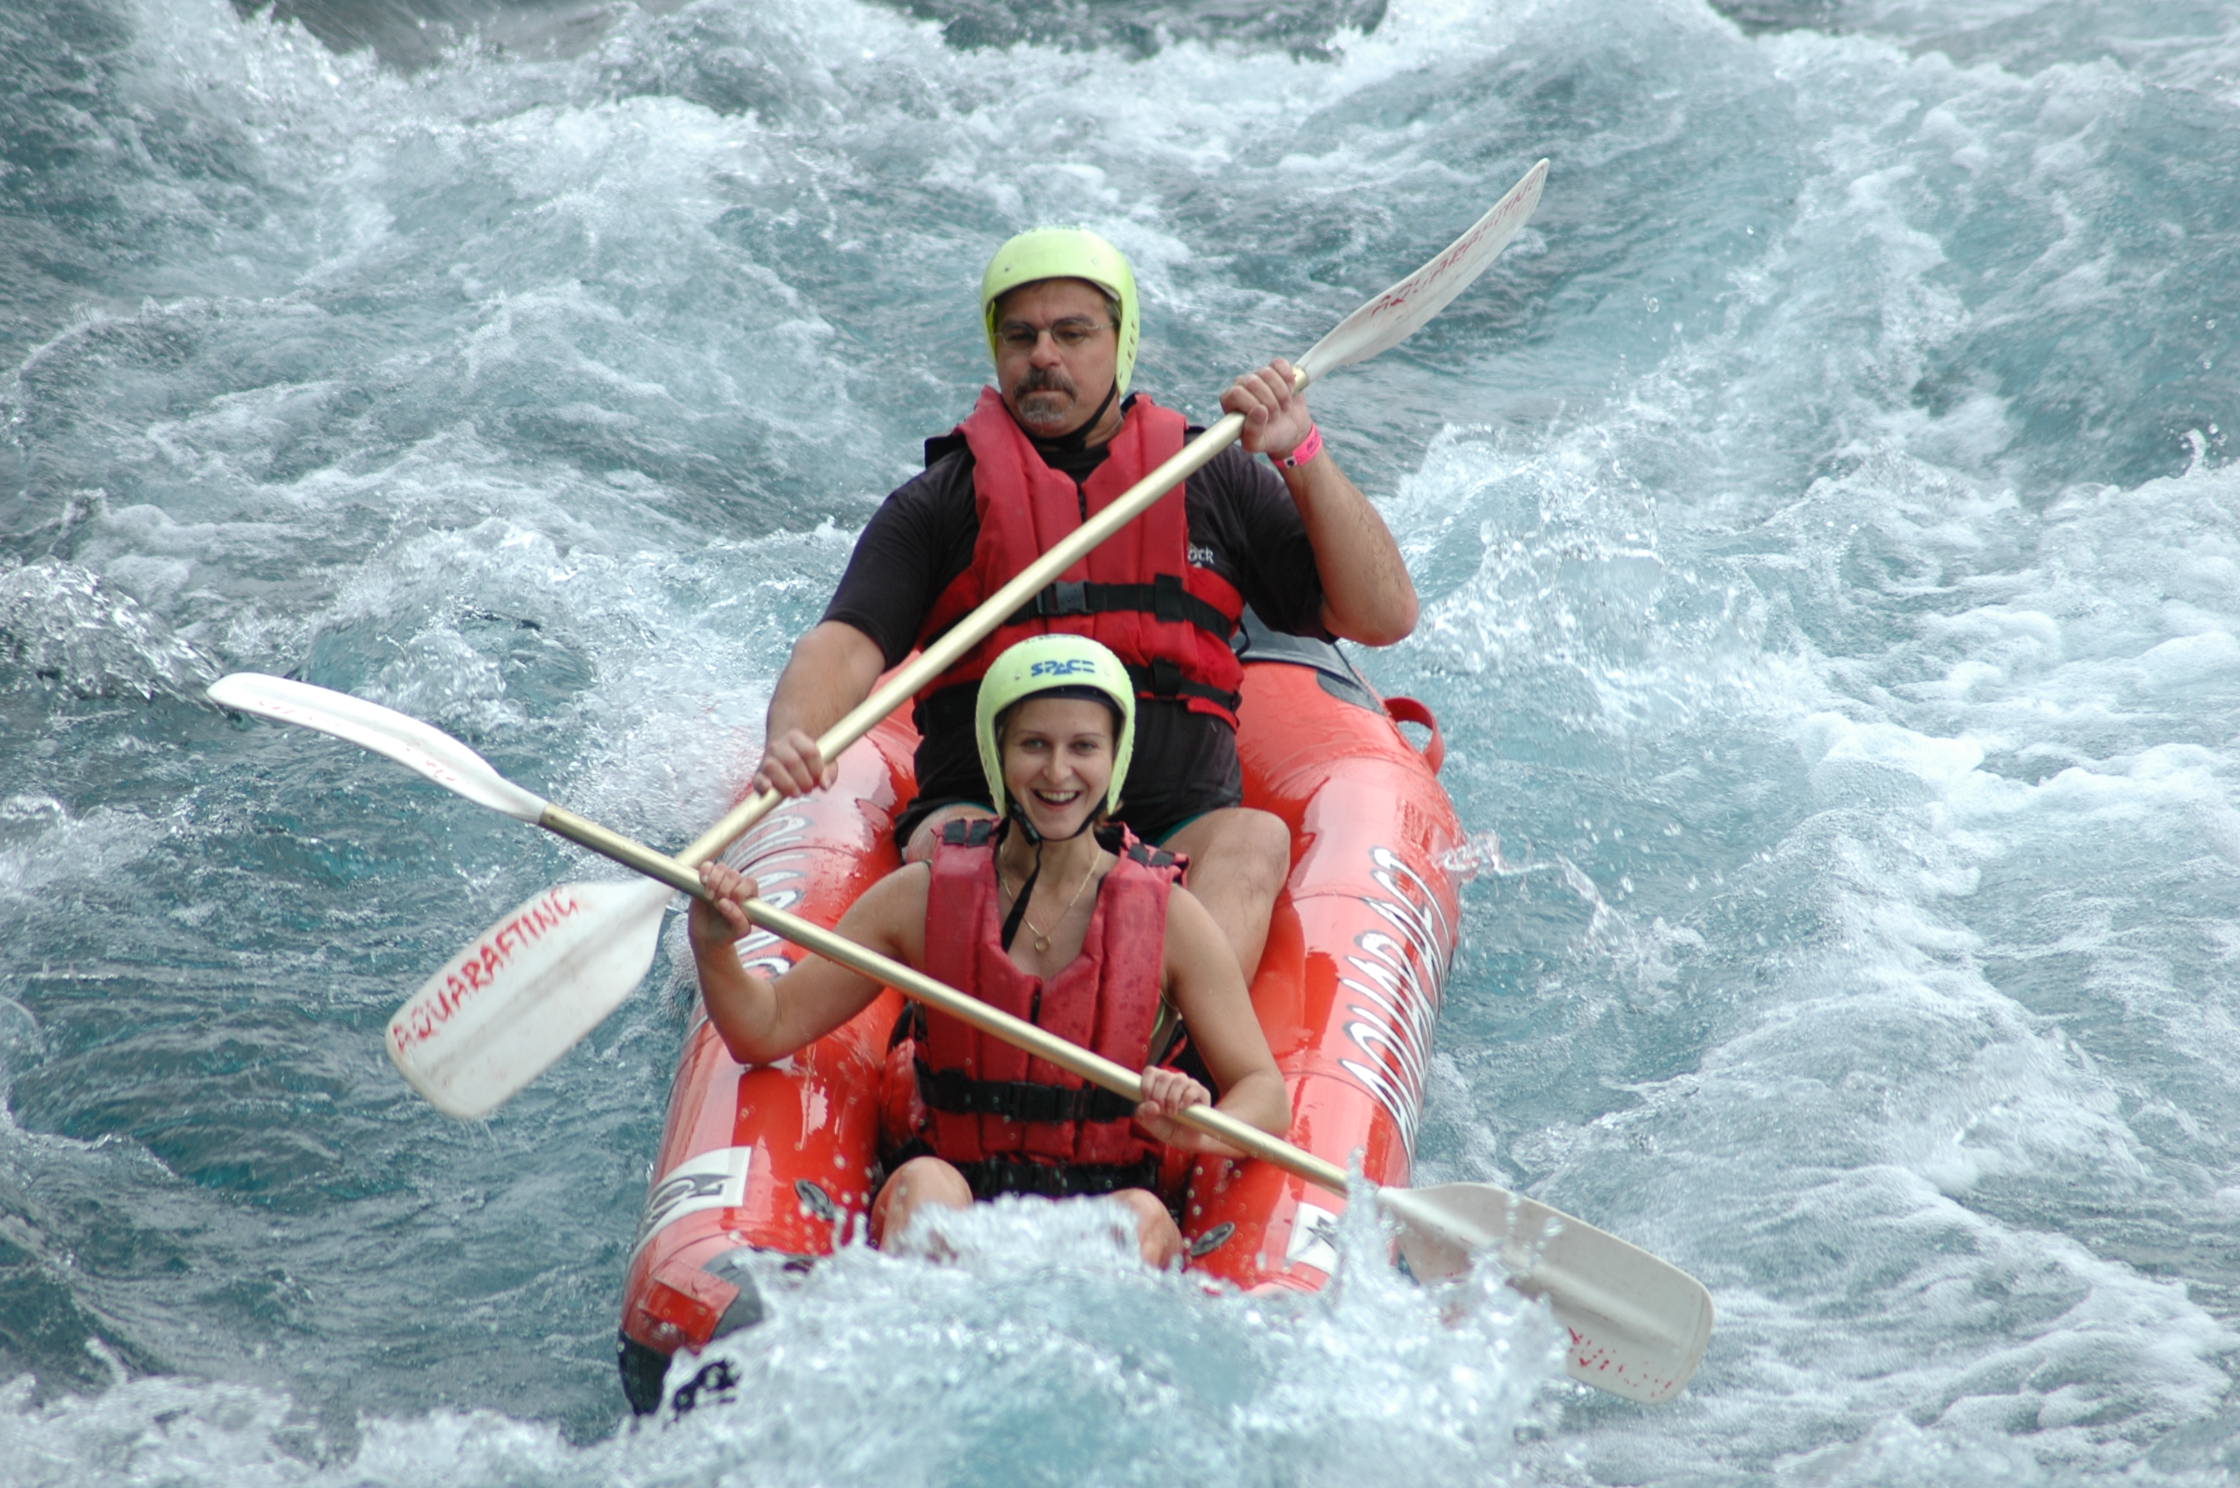 Antalya Kprl Kanyon Rafting